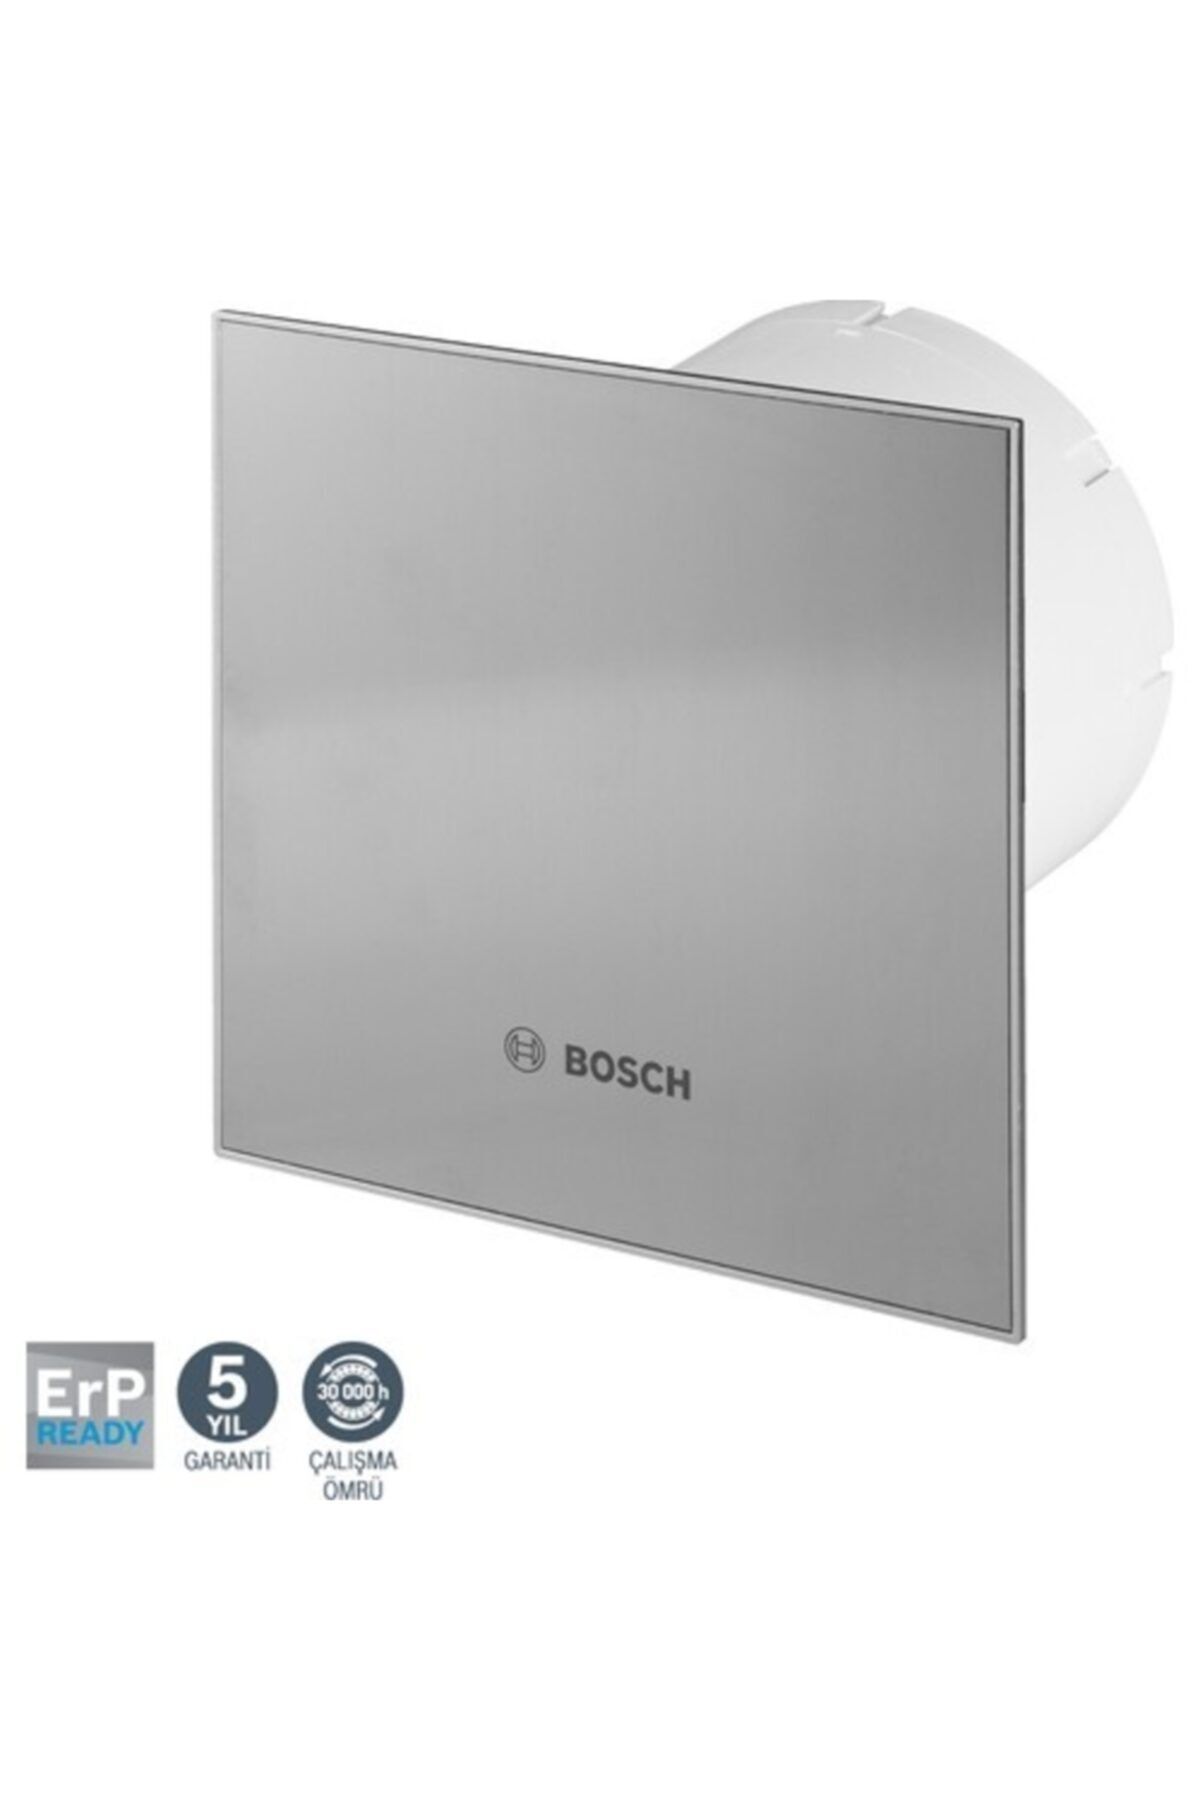 Bosch F1700 Ws 100 Dp 100 I Inox Duvar Tipi Aspiratör